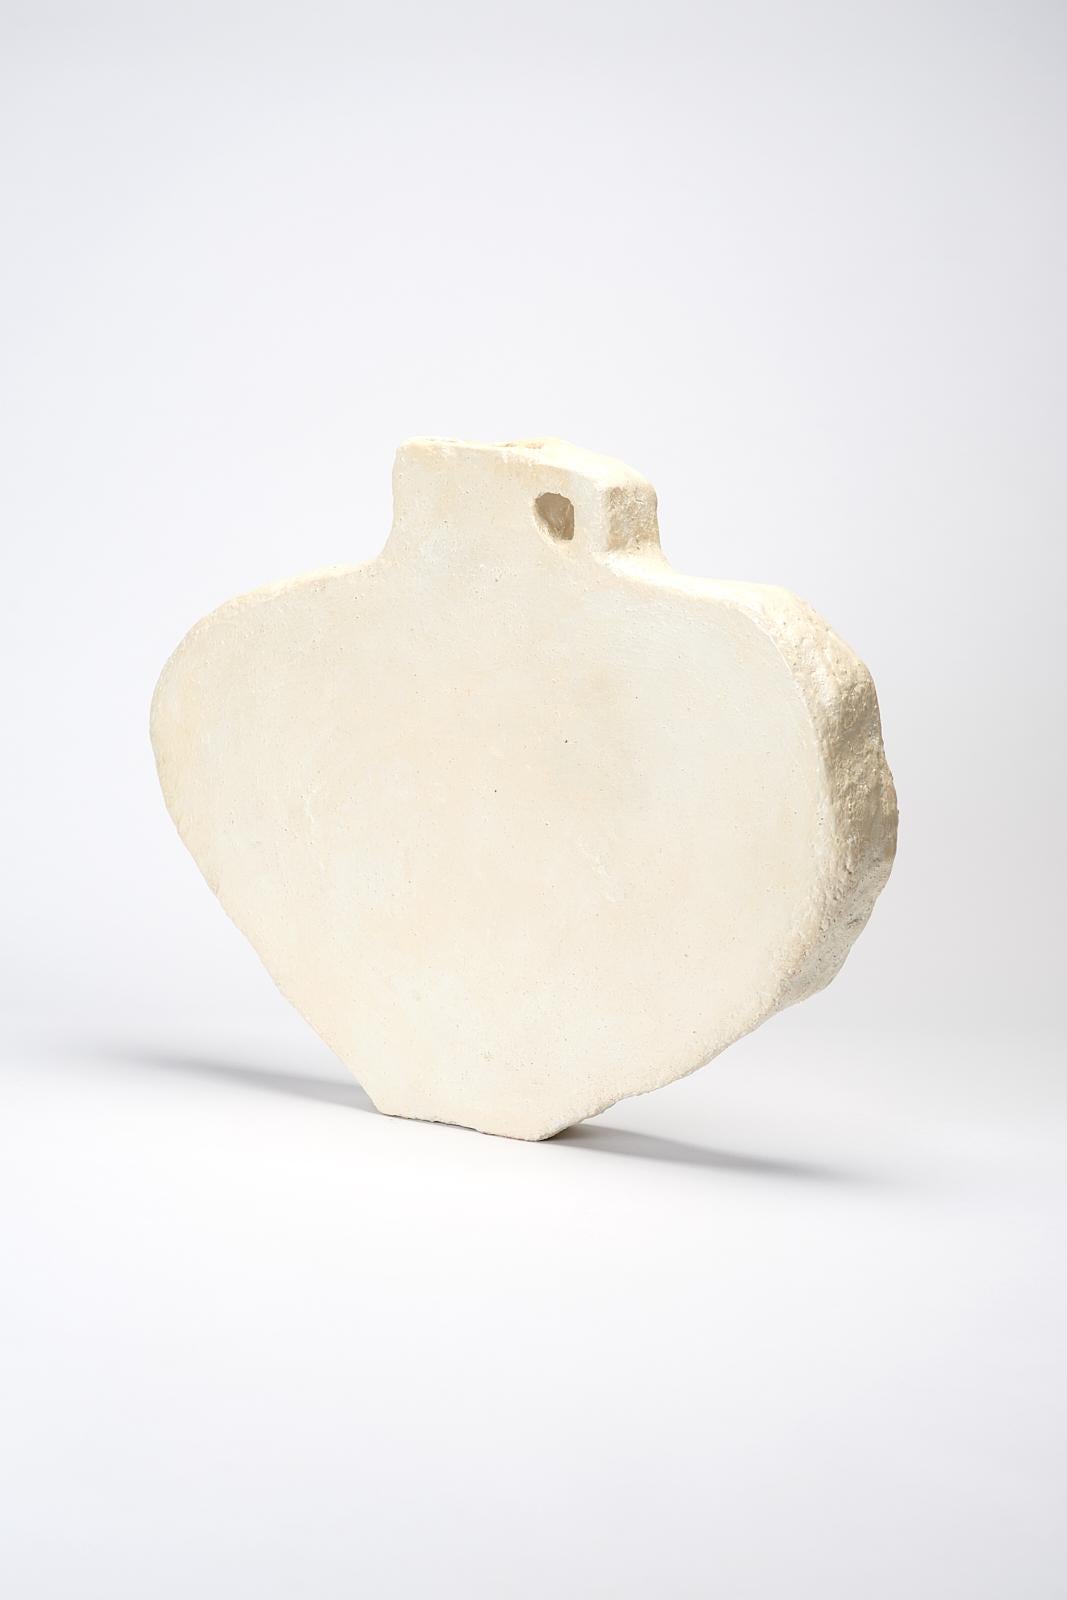 Modern Nerva Vase by Willem Van Hooff